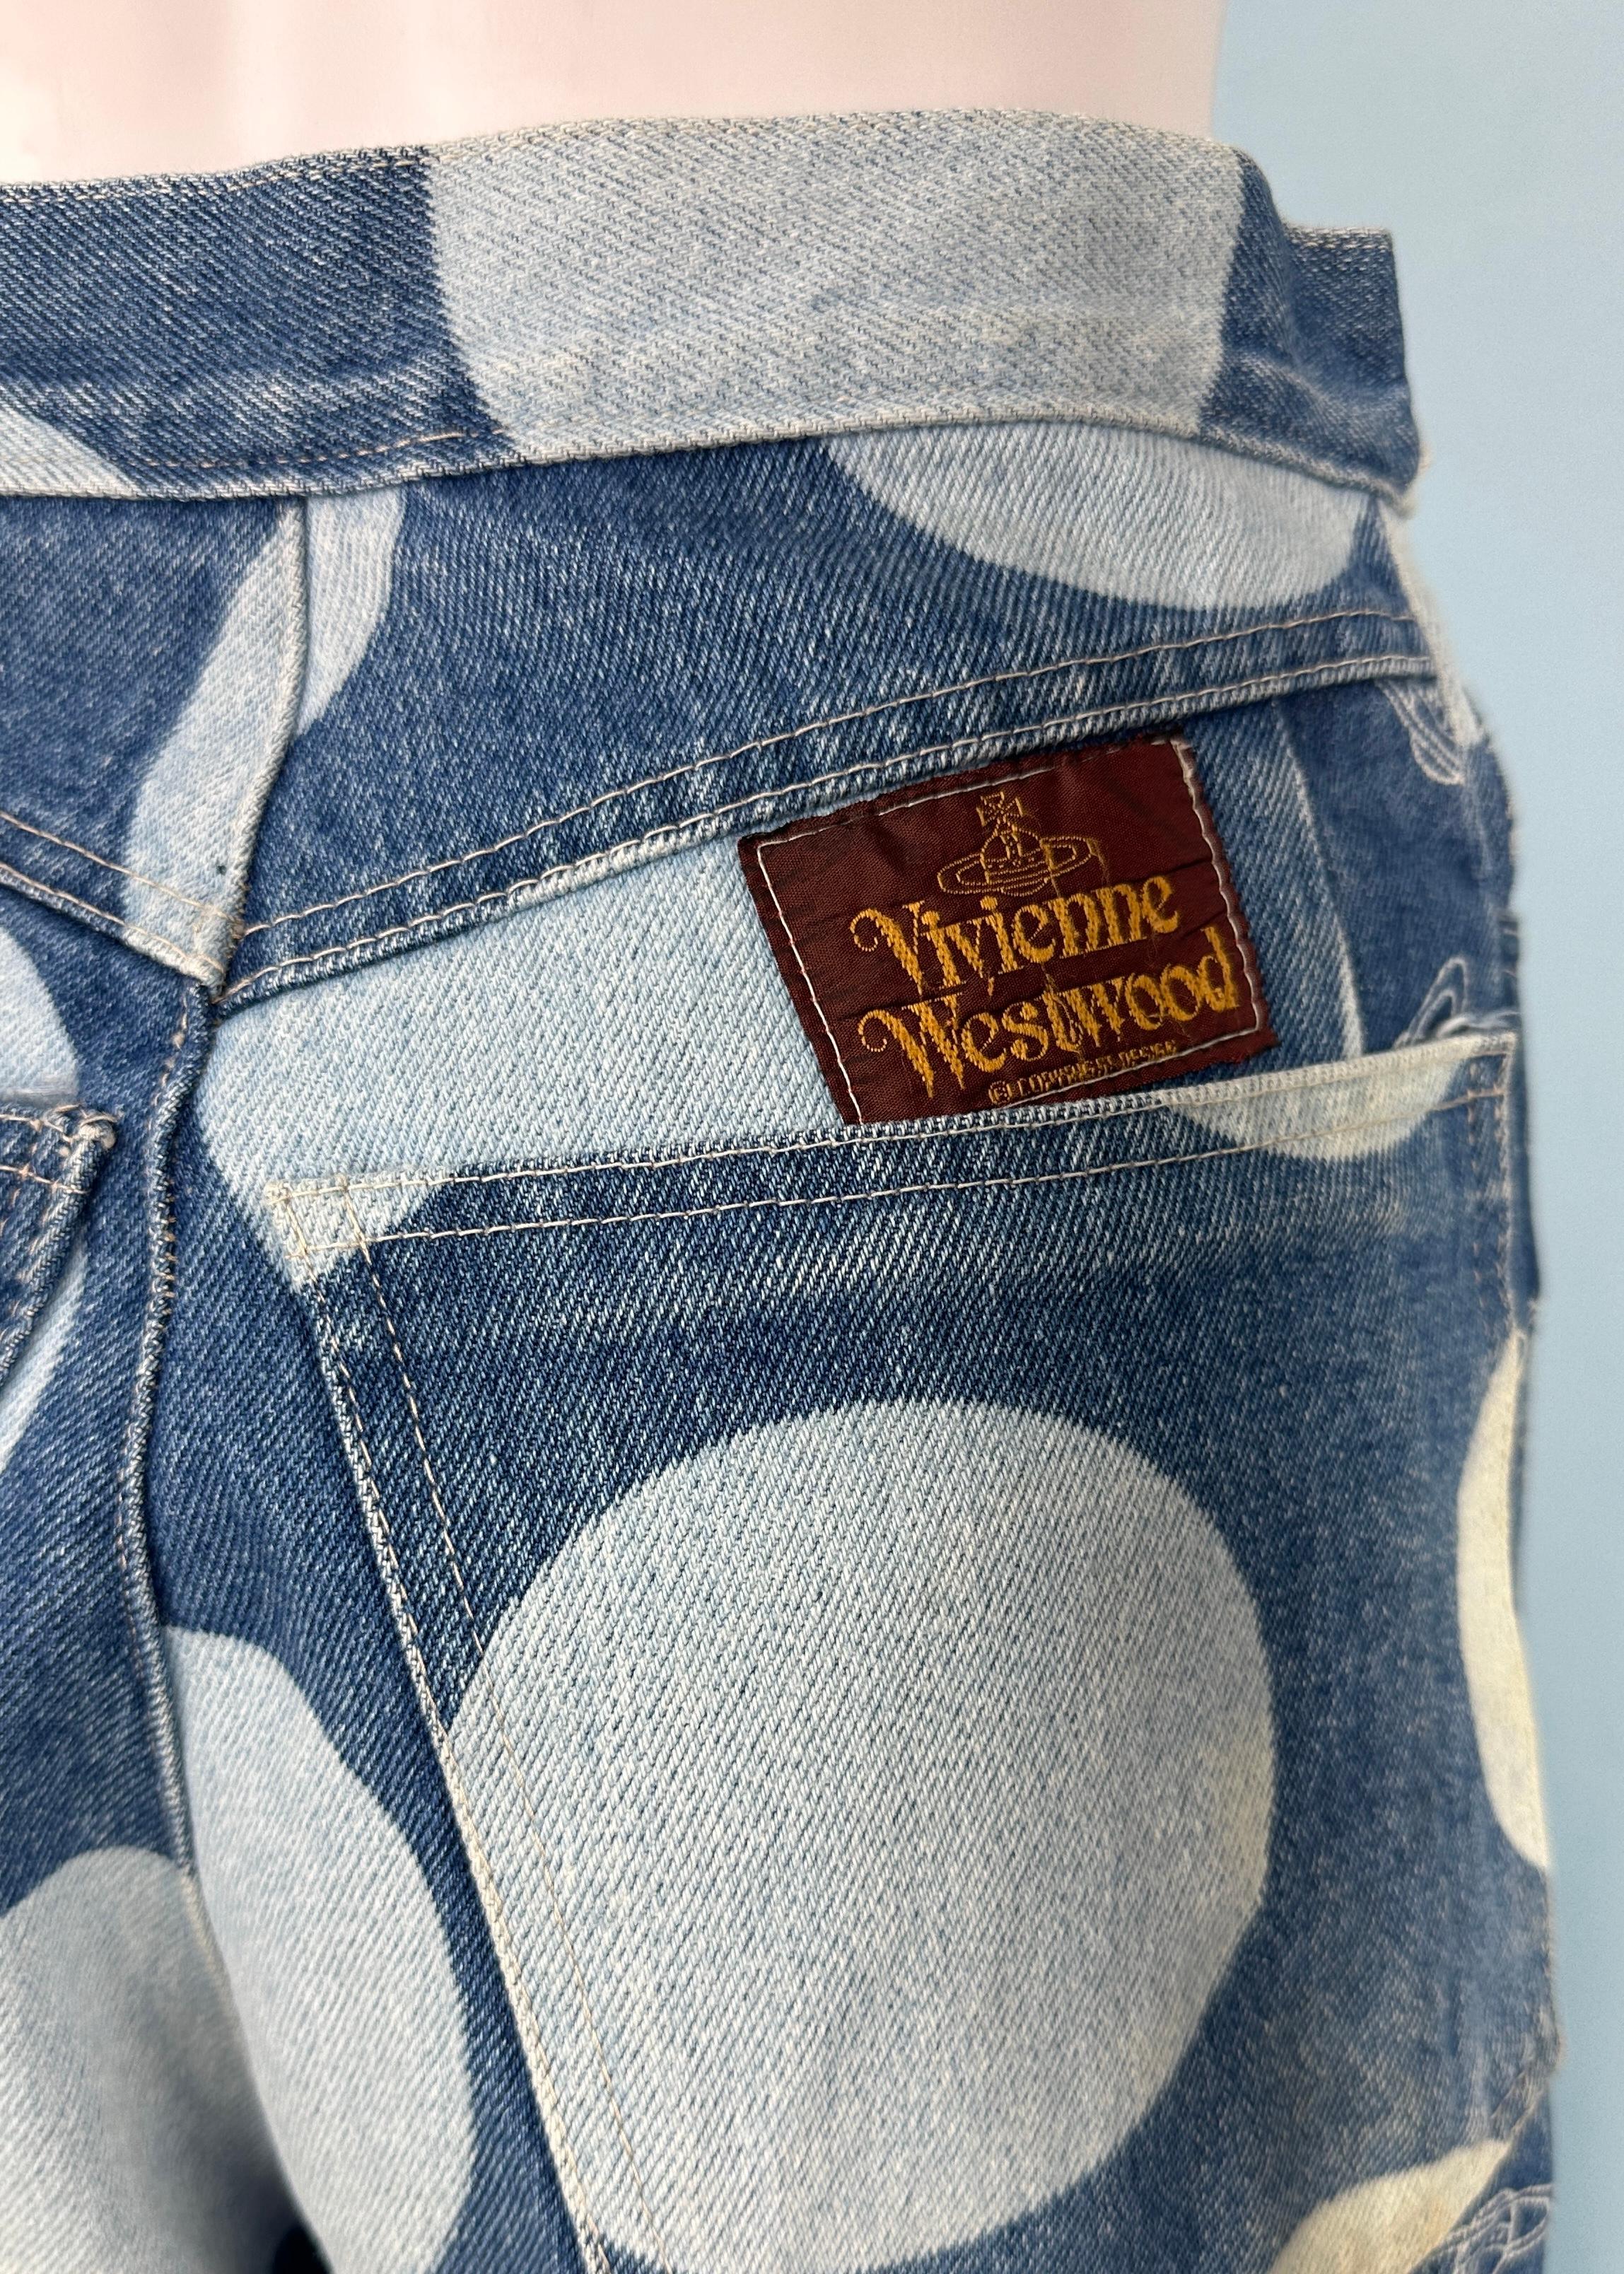 Vivienne Westwood Spring 1986 Orb & Polka Dot Denim Jeans For Sale 2